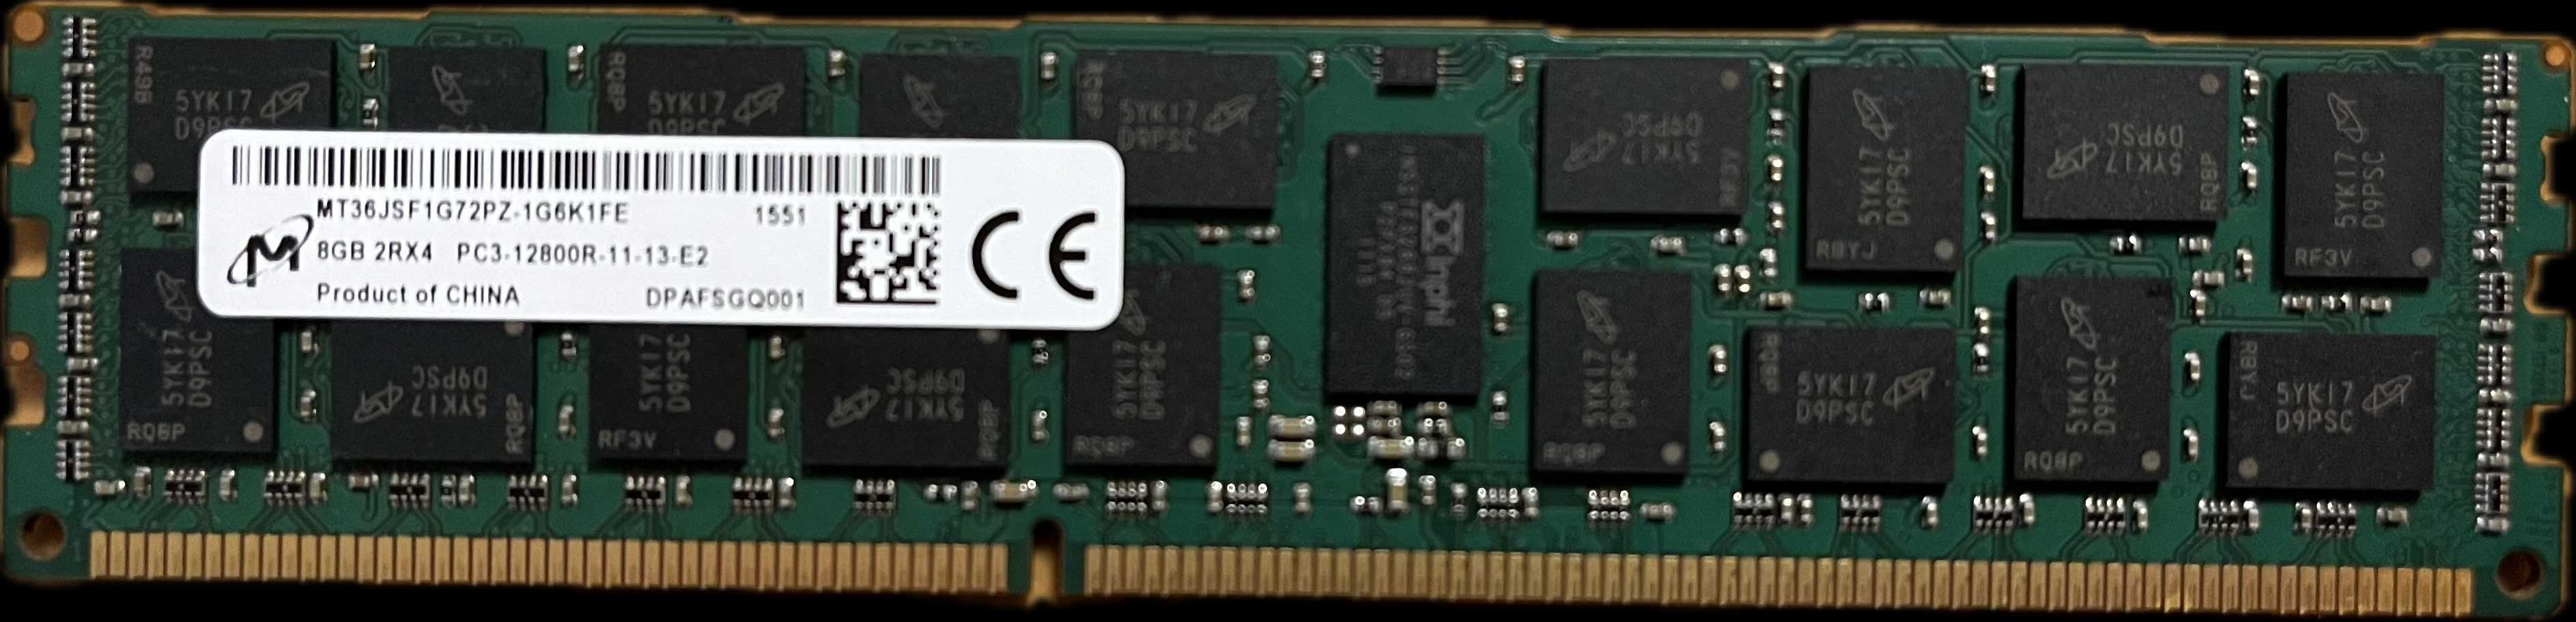 8GB 2RX4 PC3-12800R-11-13-E2